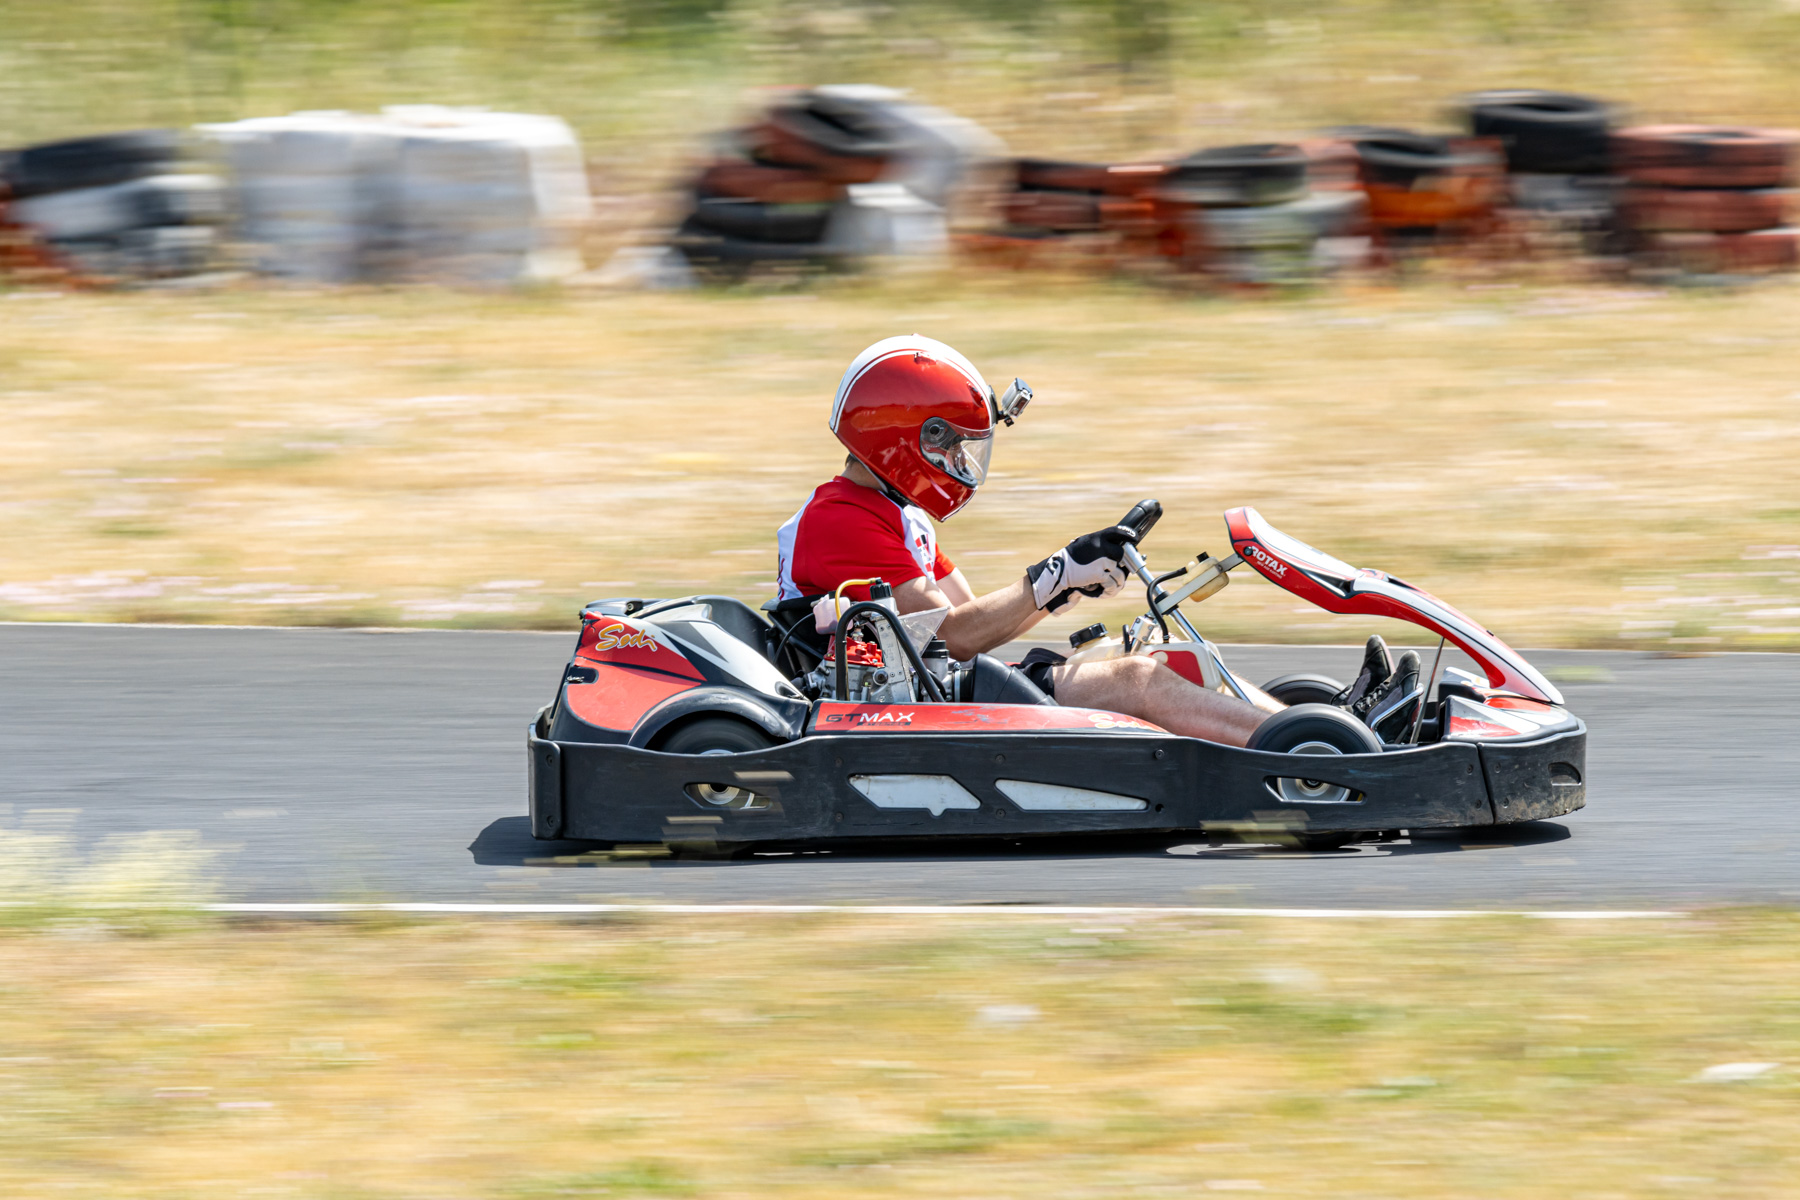 Kart de location sport en action sur le circuit de karting Fun Kart (Ganges - Hérault)